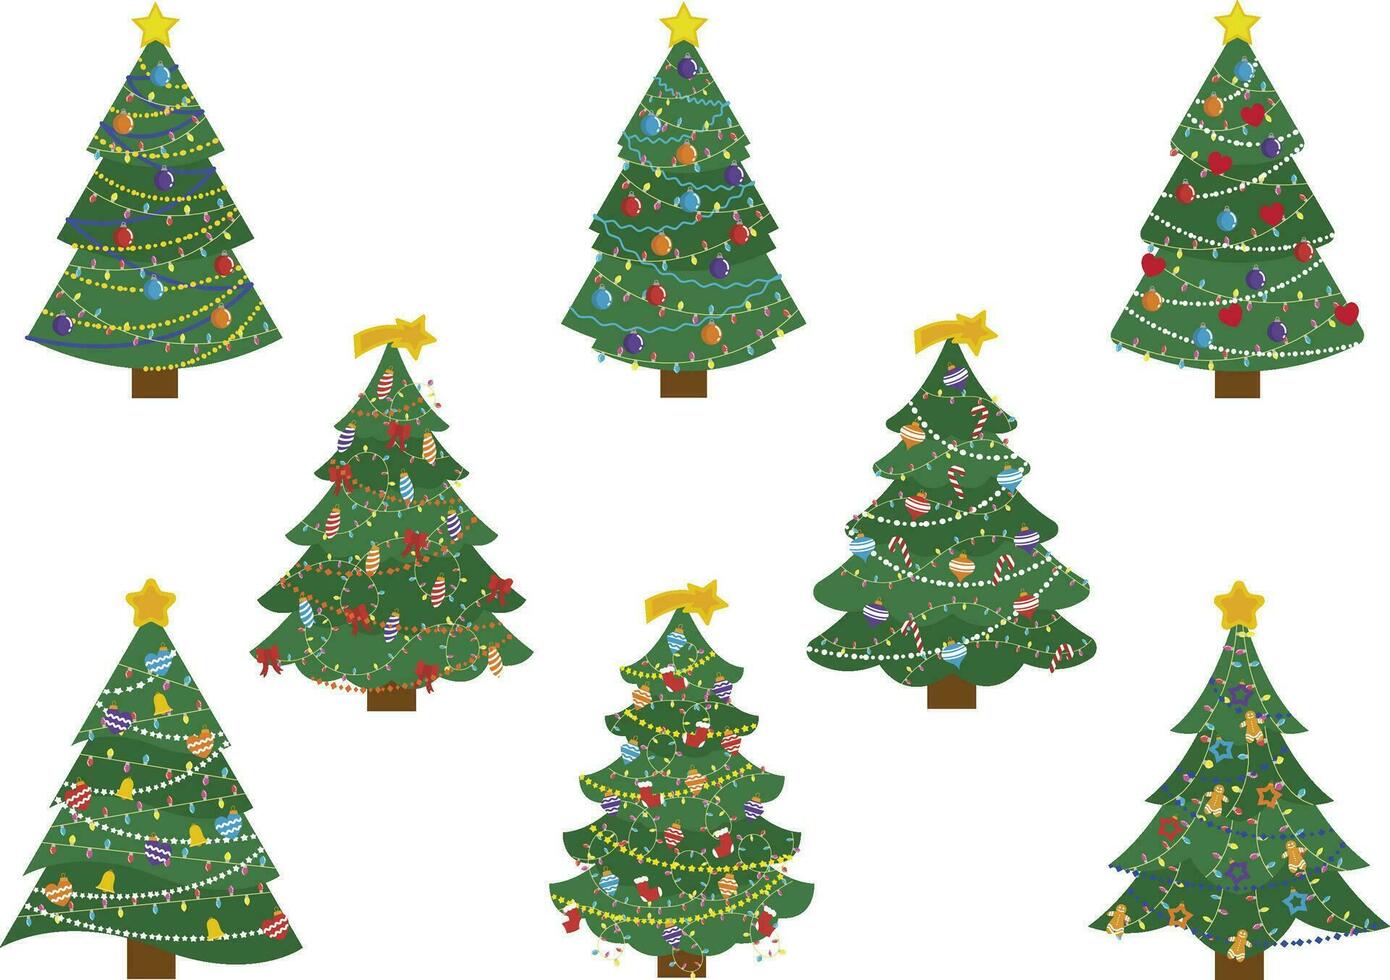 eben Grün Weihnachten Bäume. Dezember Ferien modern Baum mit Schnee Blätter, eingestellt von 6 Stücke von Weihnachten dekoriert Weihnachten Bäume, Weihnachten Baum Sammlung vektor